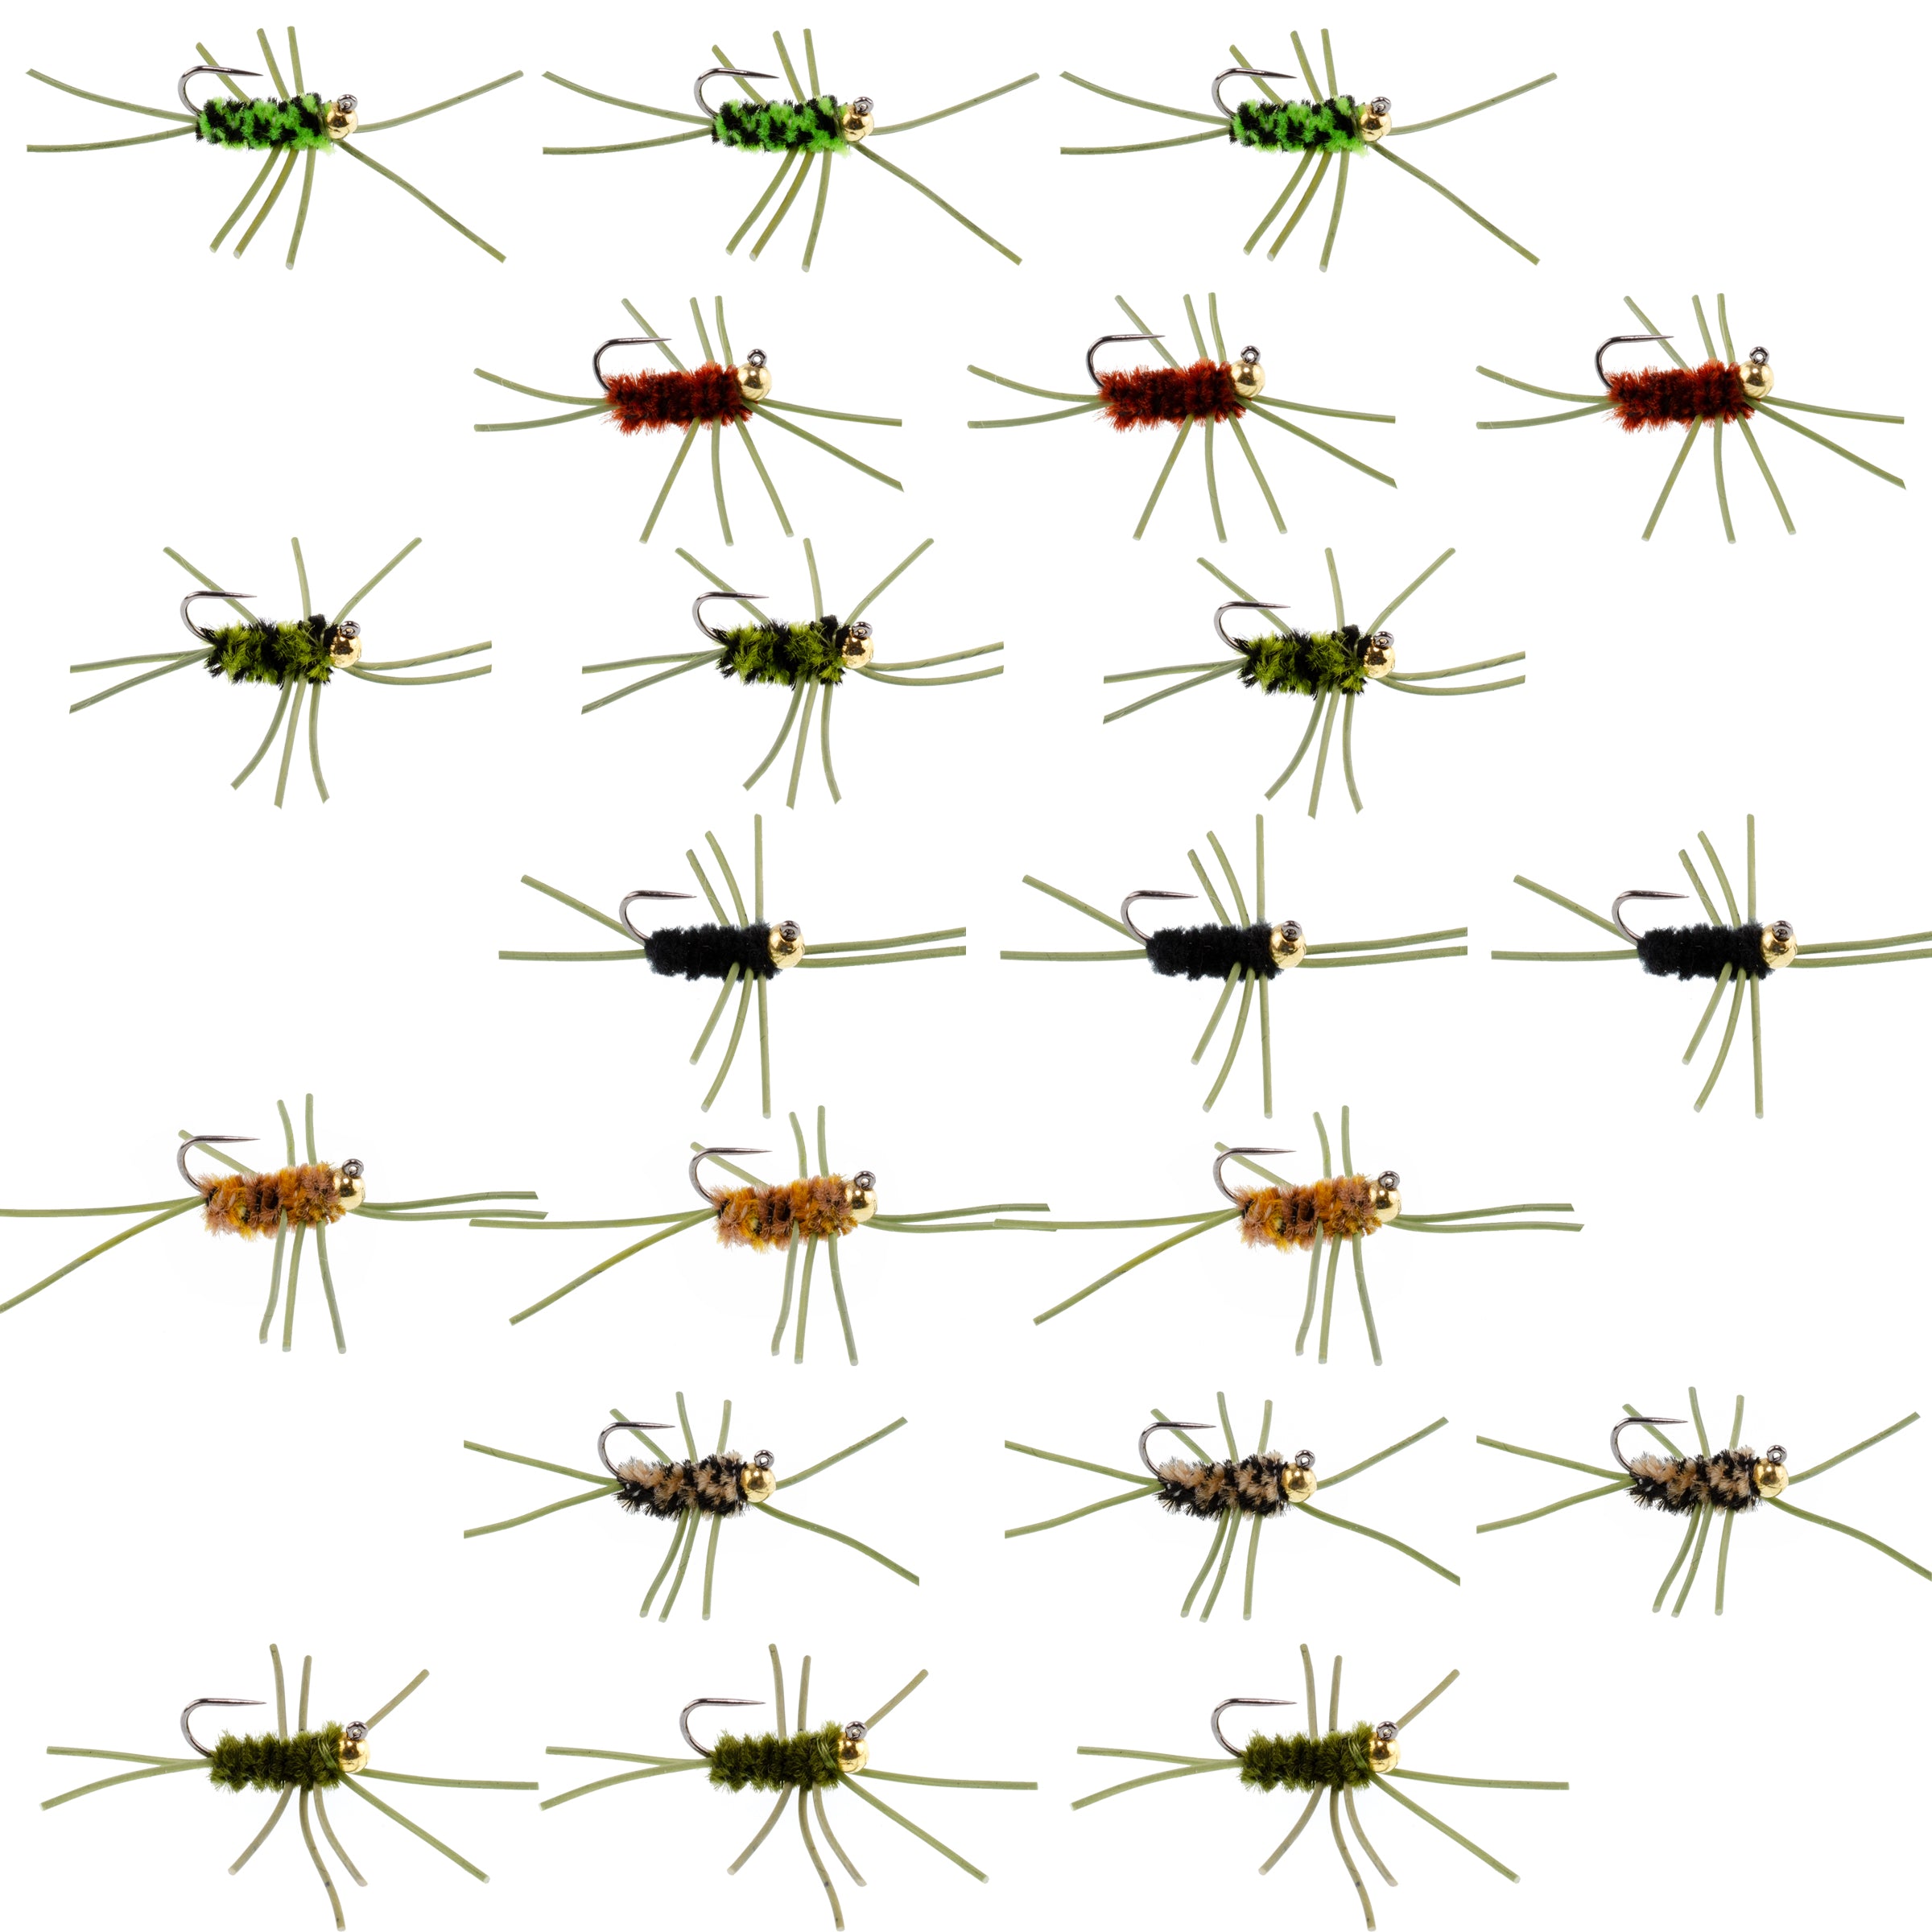 Cuentas de tungsteno Jigged Pat's Rubber Legs Surtido de moscas para pesca con mosca, patrón de mosca húmeda para trucha y lubina, 21 moscas, 7 colores, tamaño de anzuelo 10 